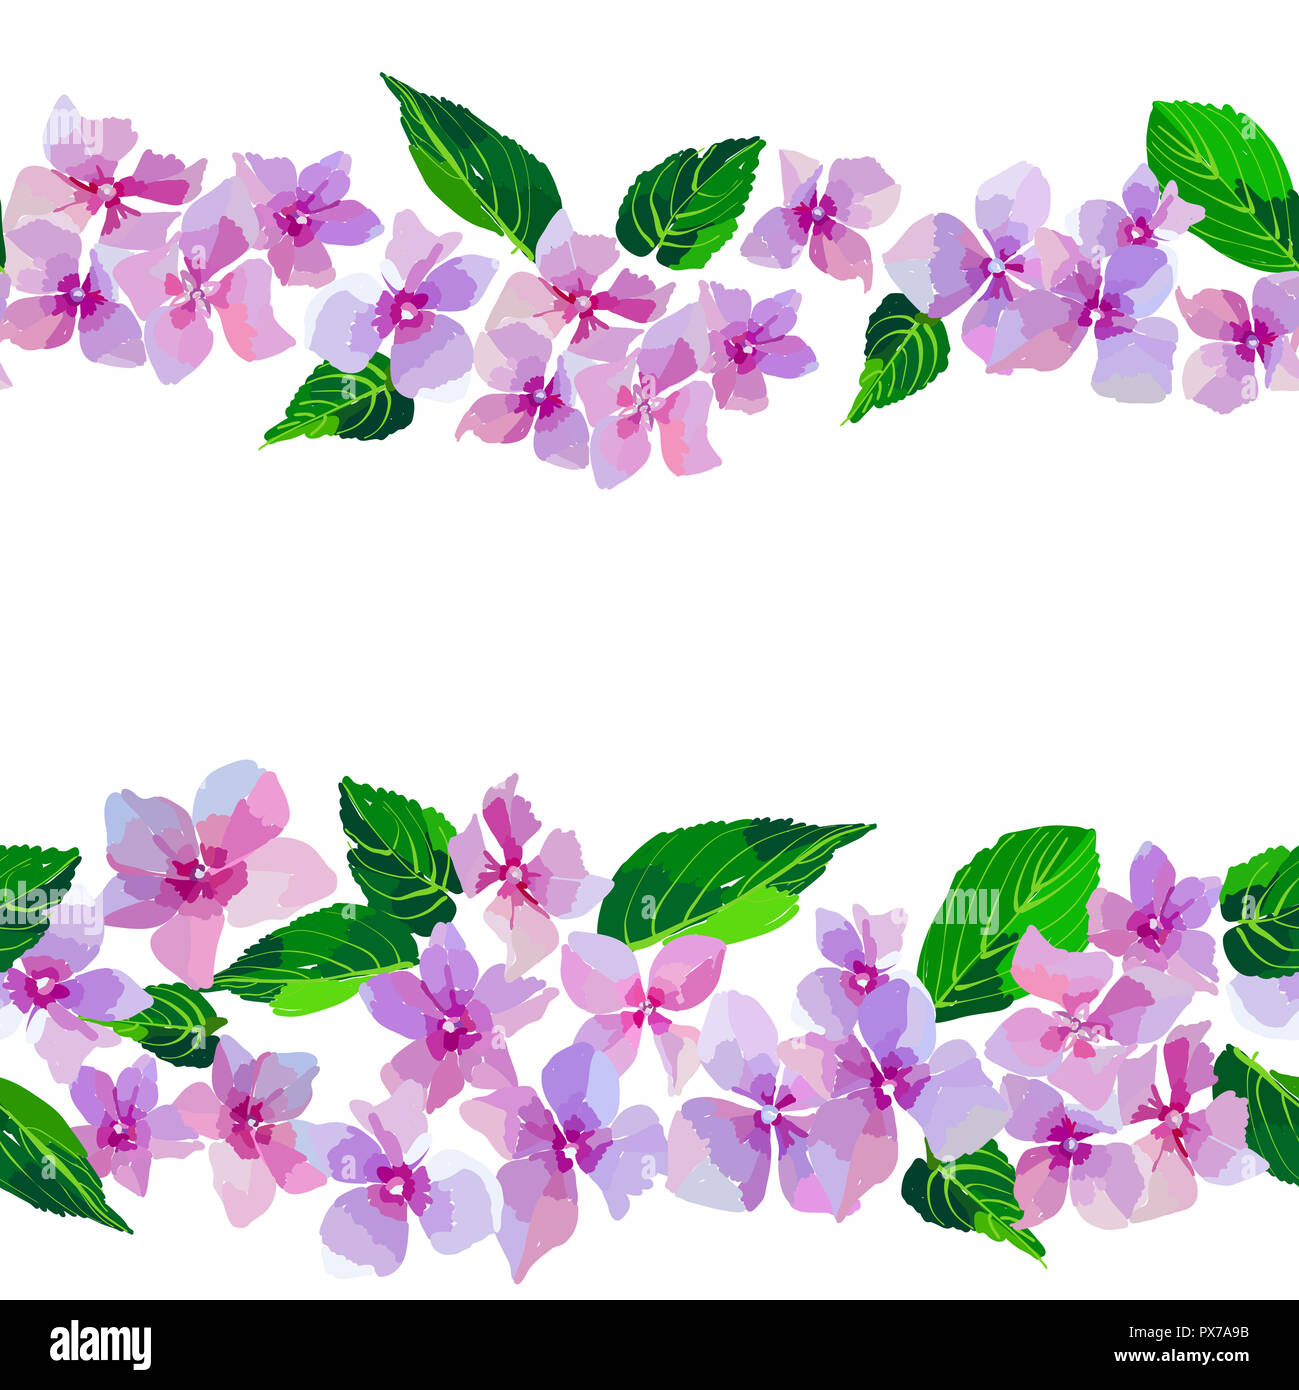 Fleurs sauvages lilas modèle homogène. Les petites fleurs et les feuilles à la main. Vector illustration pour l'industrie textile, l'emballage, le scrapbooking. Banque D'Images